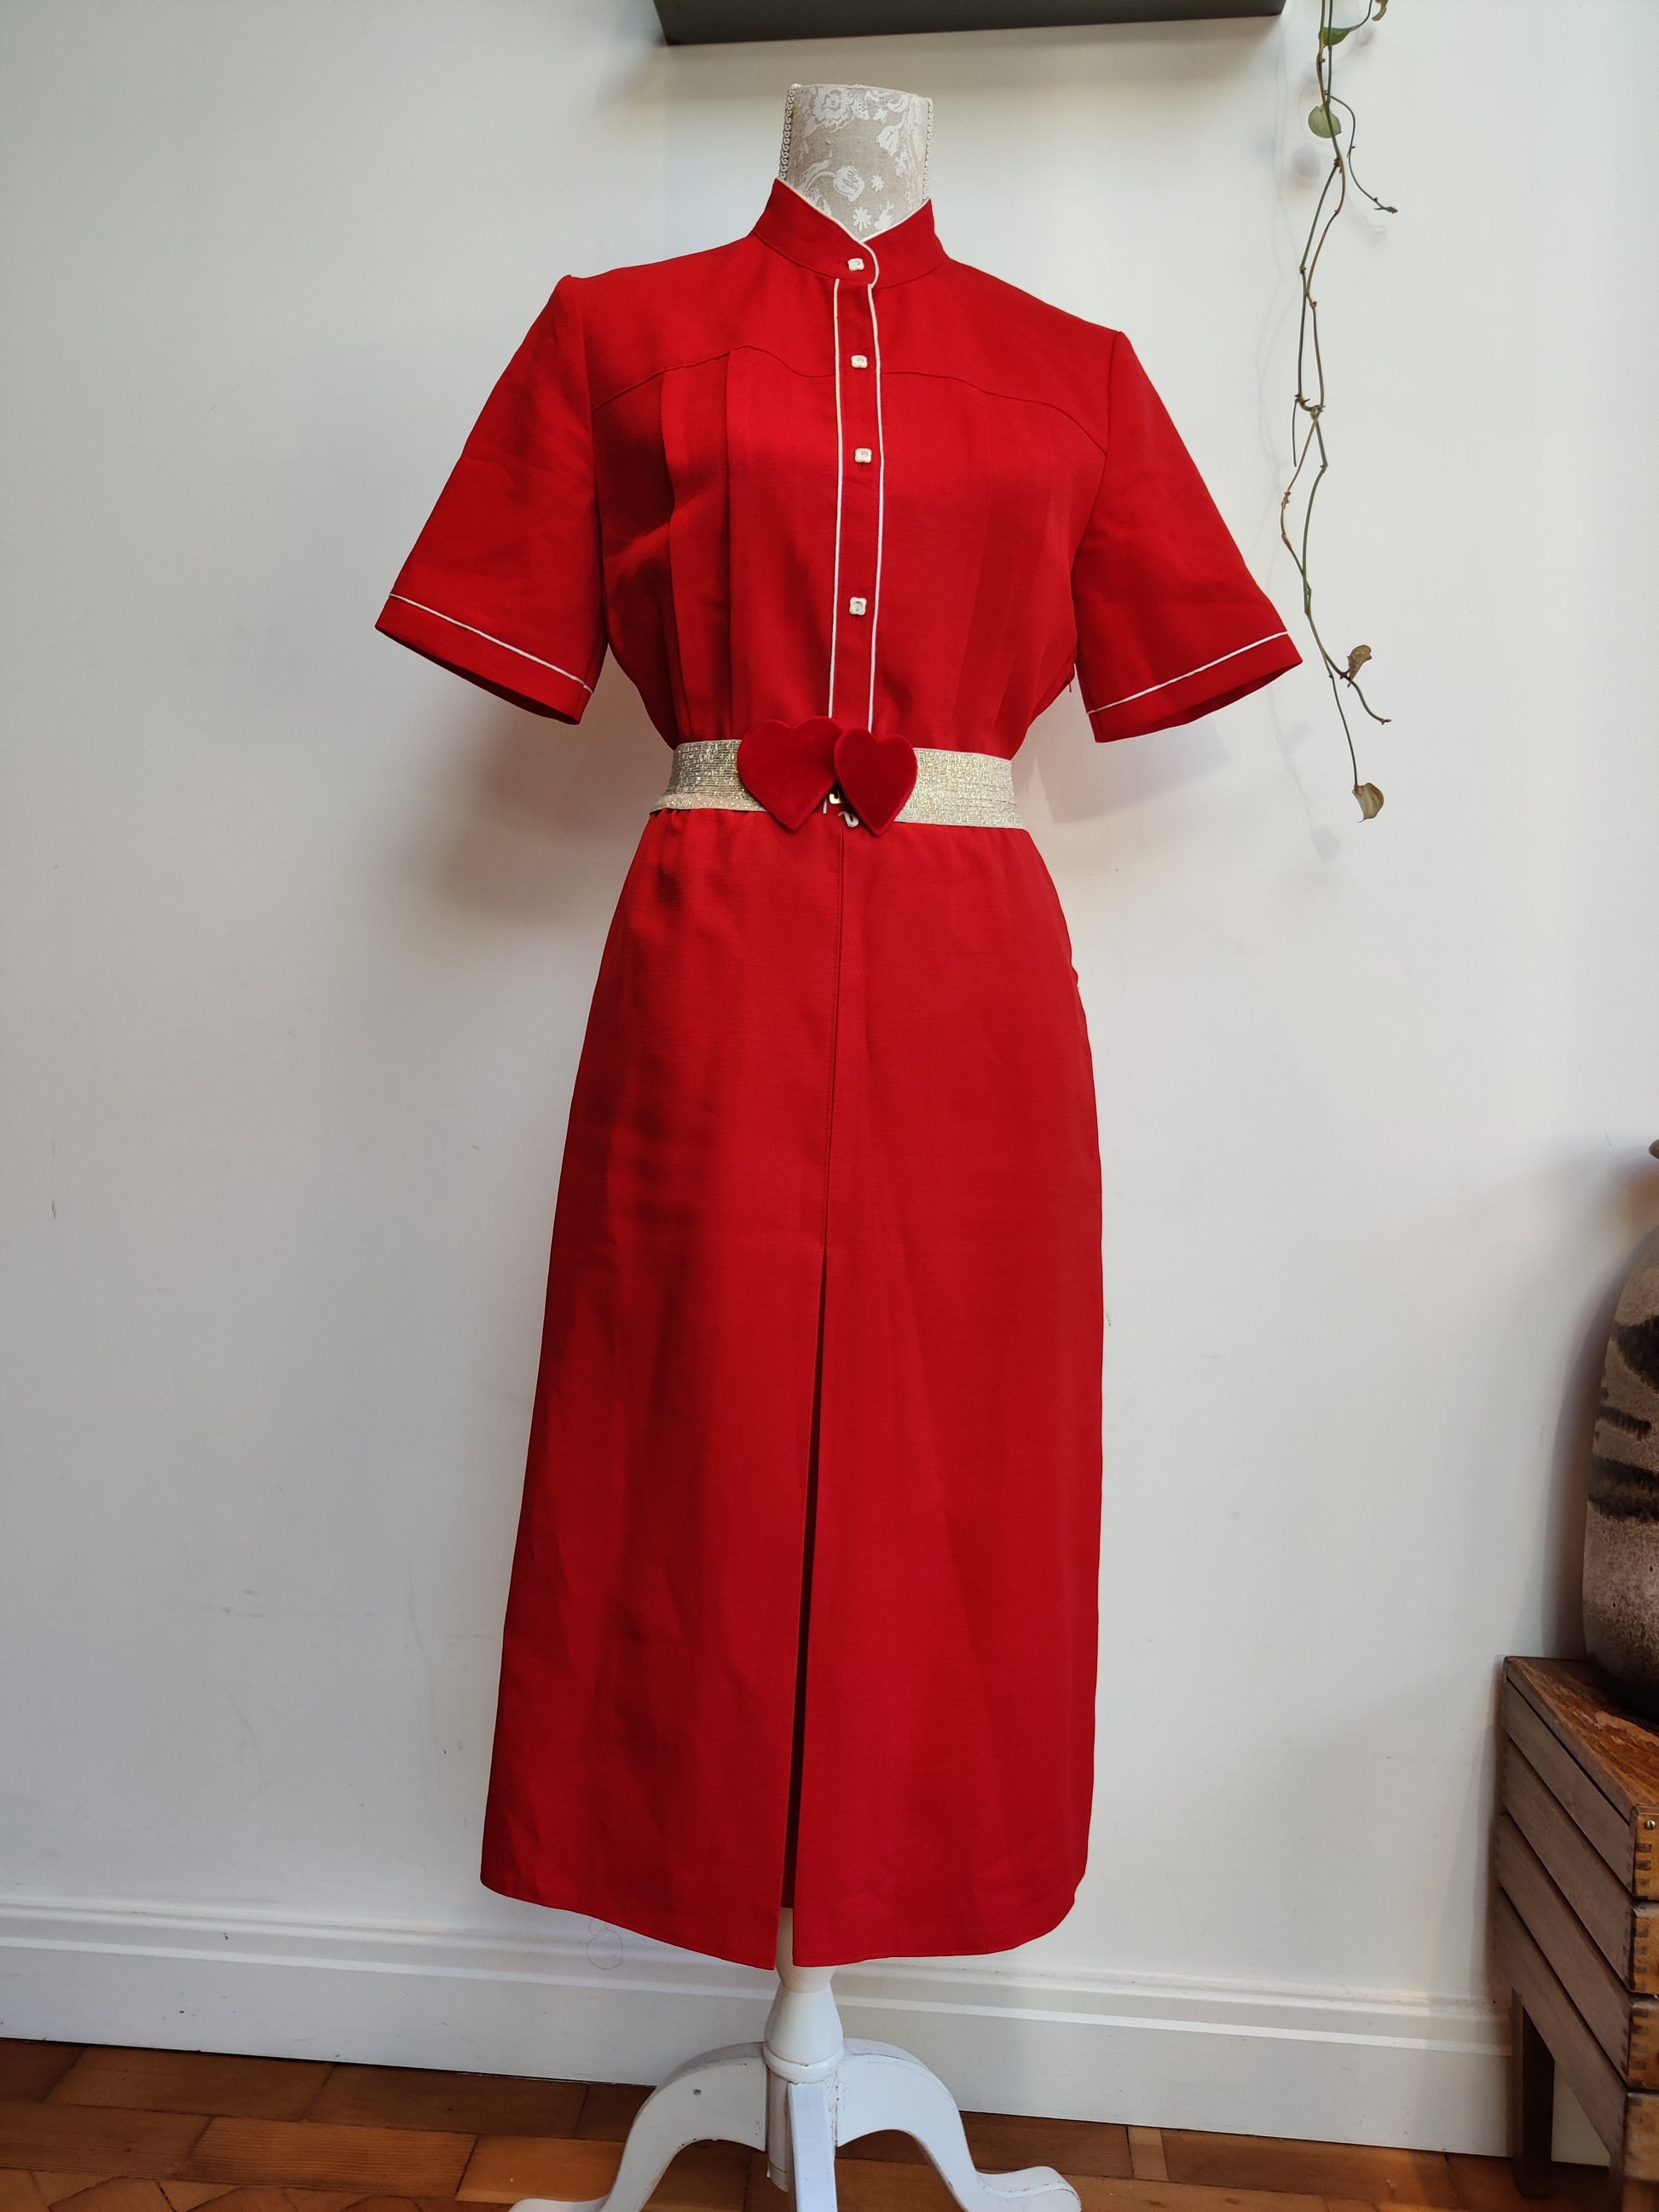 Red vintage dress size 12-14